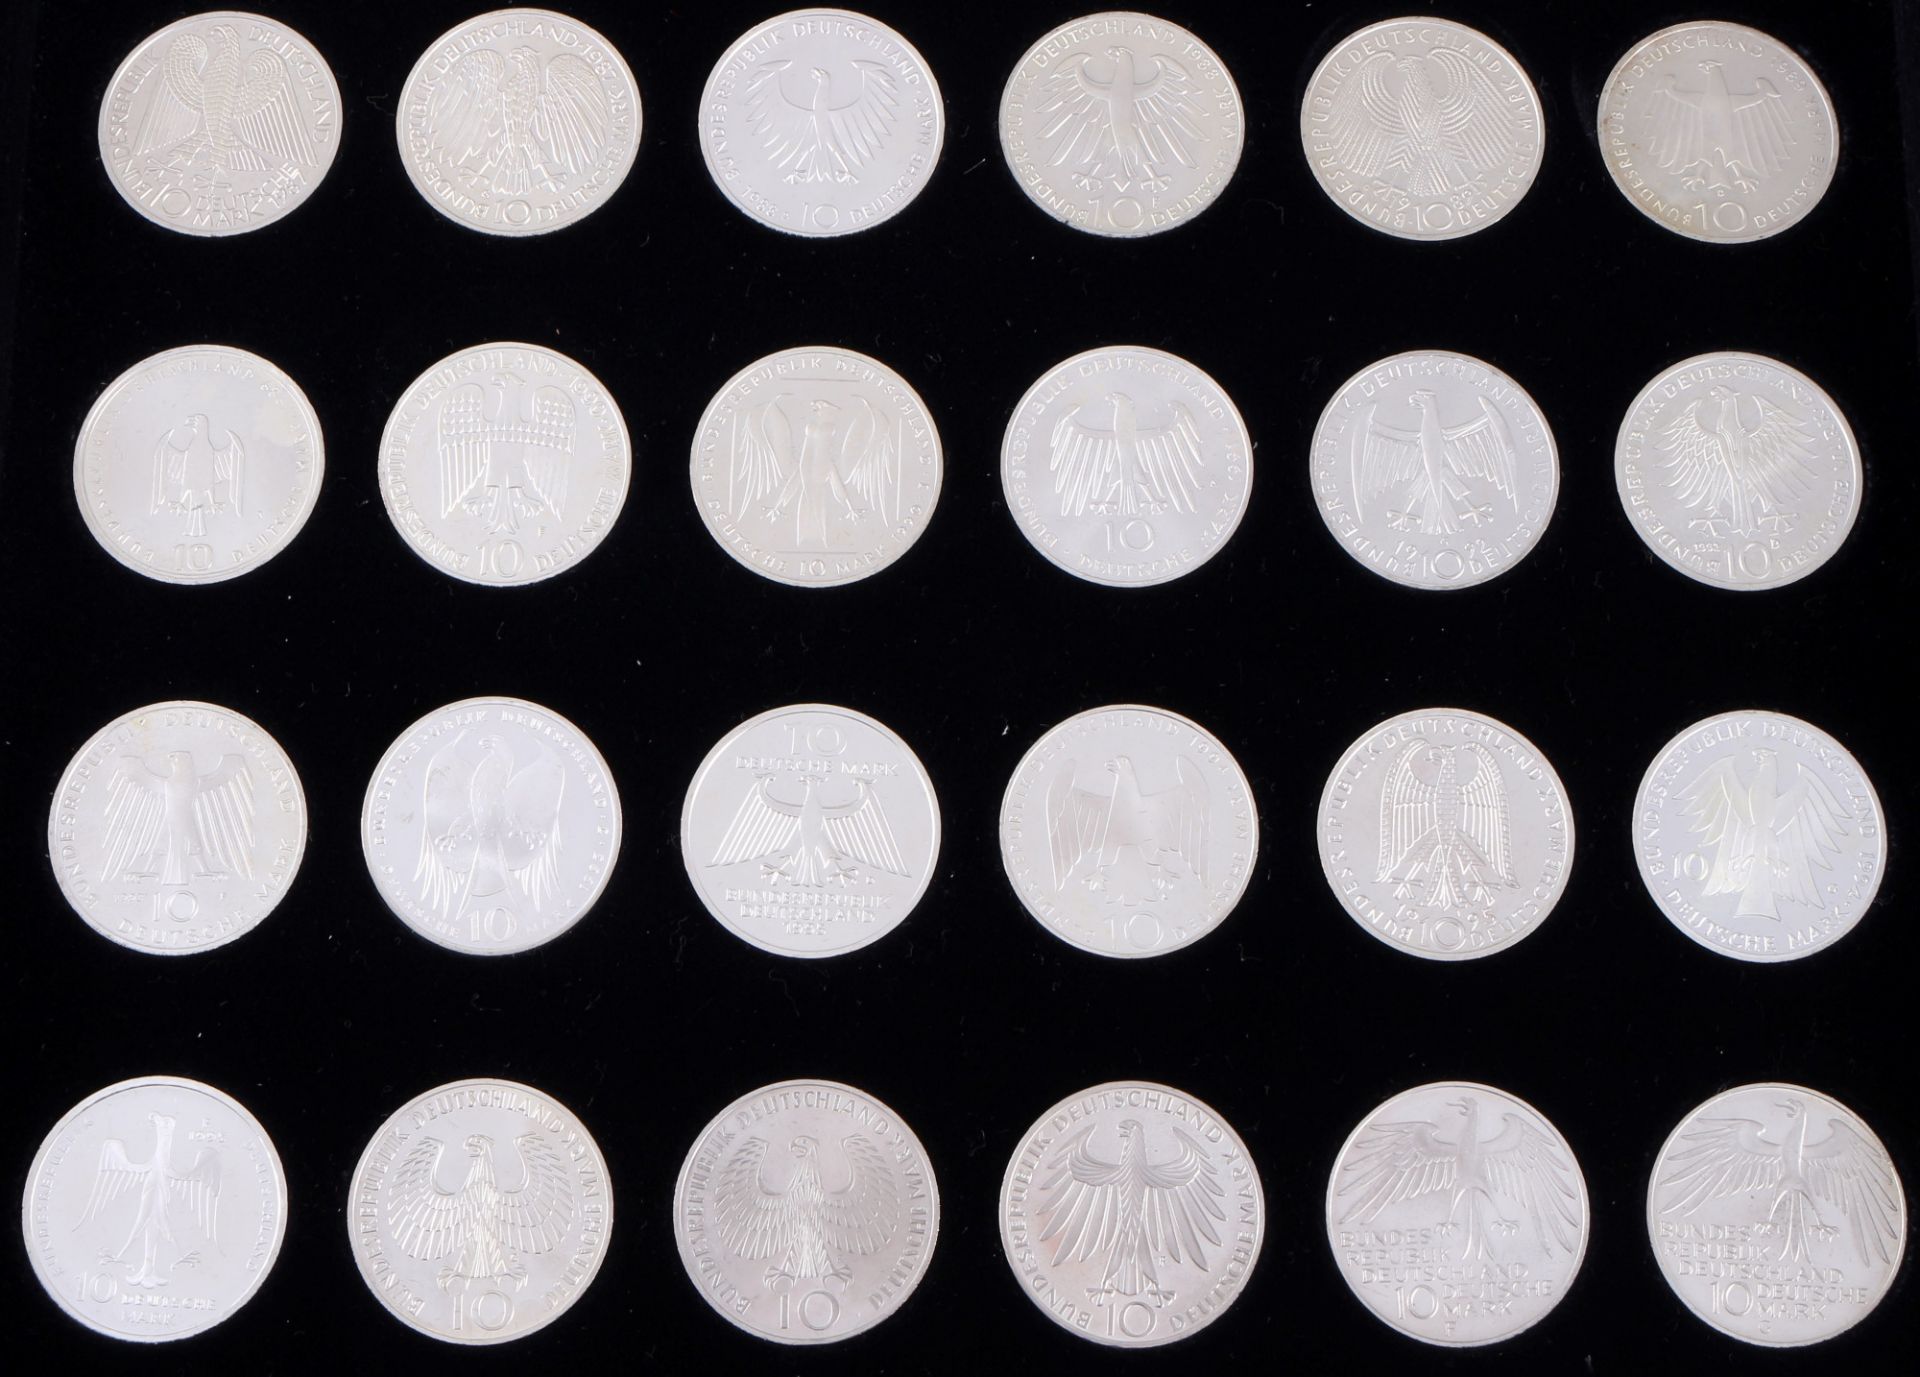 48 Silber Gedenkmünzen - 10 Deutsche Mark, silver commemorative german Mark coins, - Bild 4 aus 6